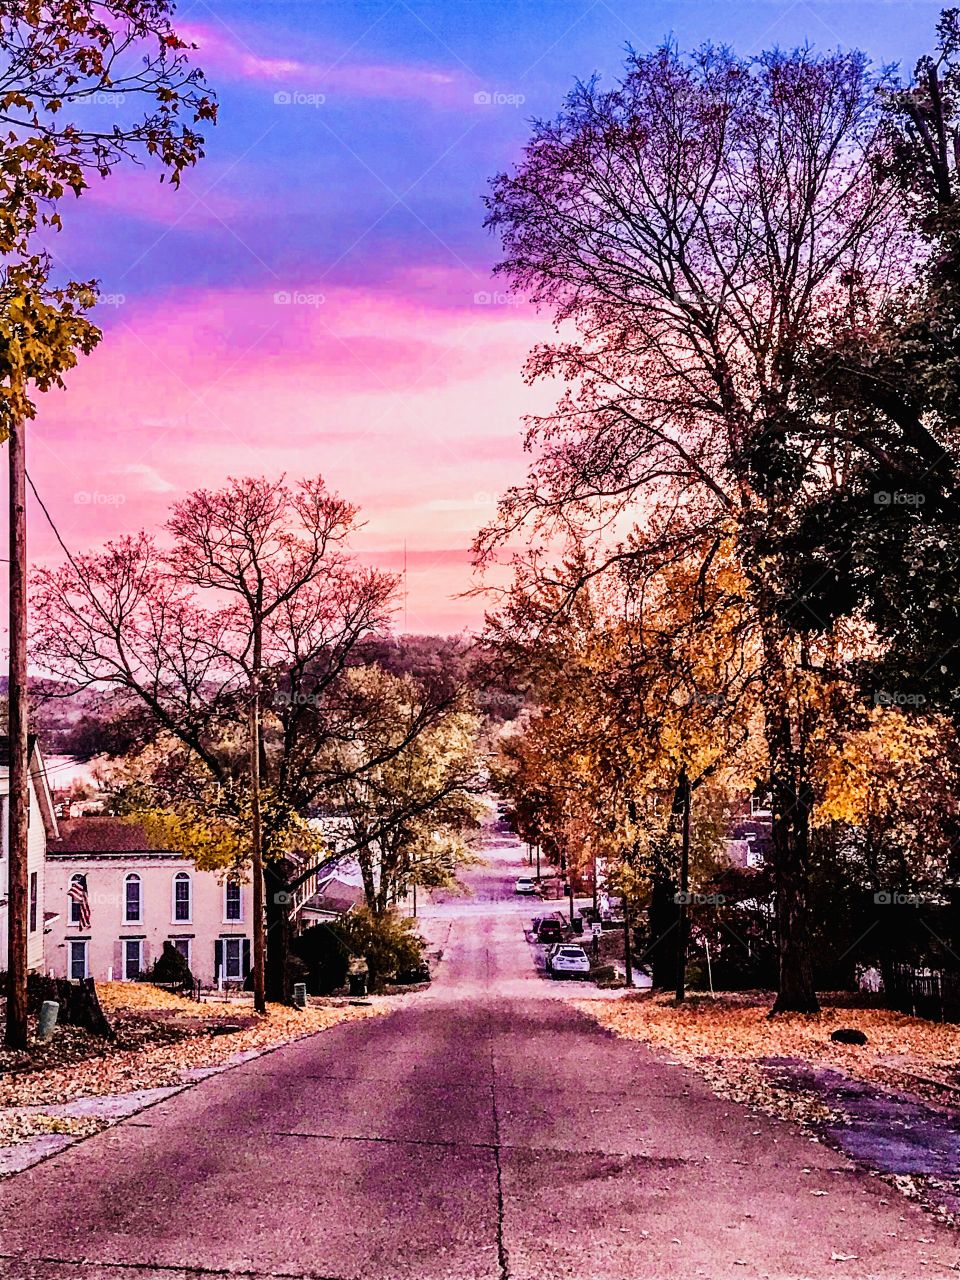 Fall in Beautiful Small Town Missouri